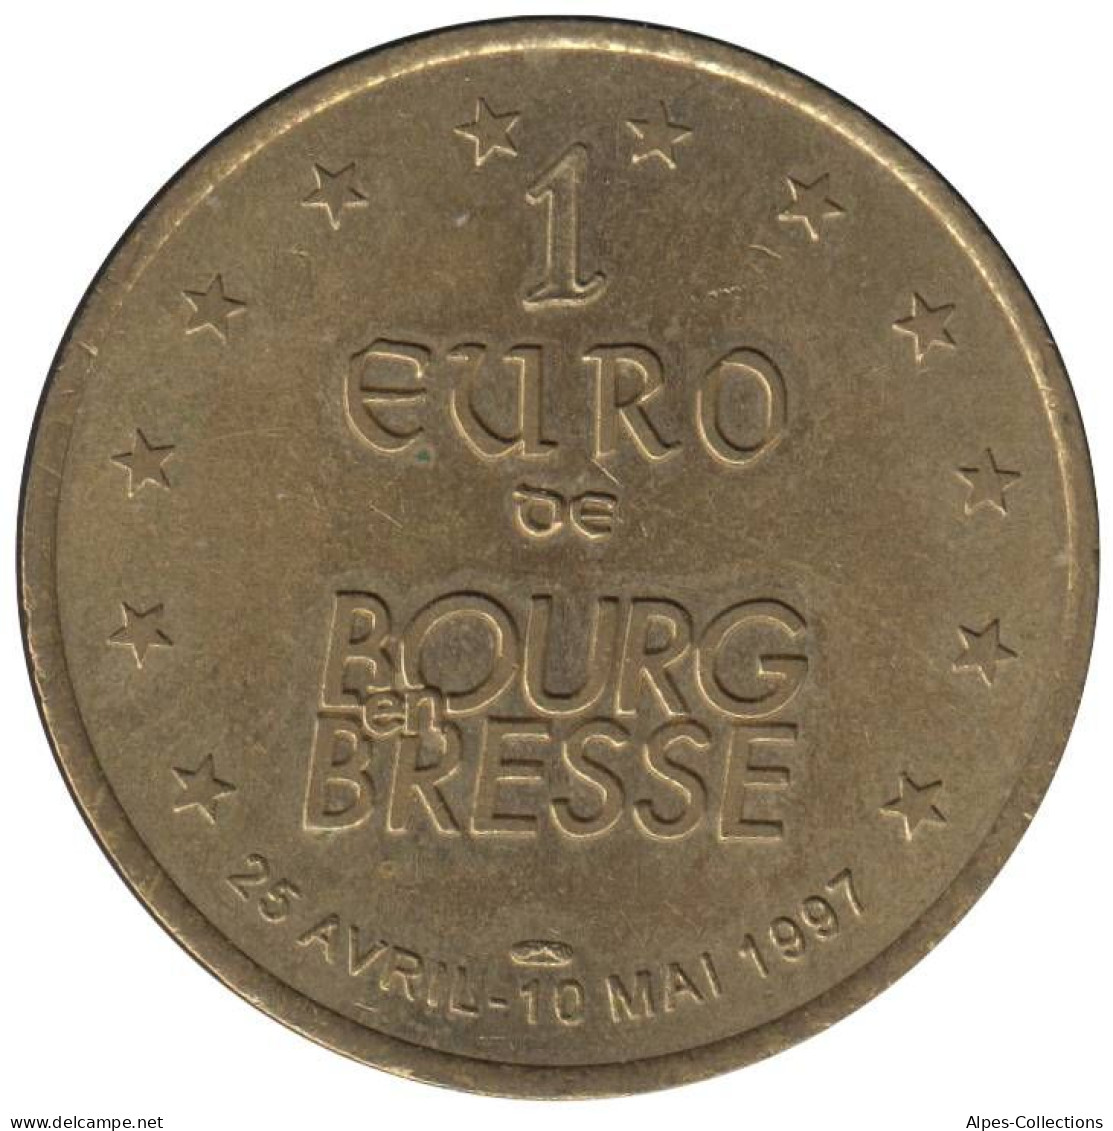 BOURG EN BRESSE - EU0010.6 - 1 EURO DES VILLES - Réf: T266 - 1997 - Euro Van De Steden